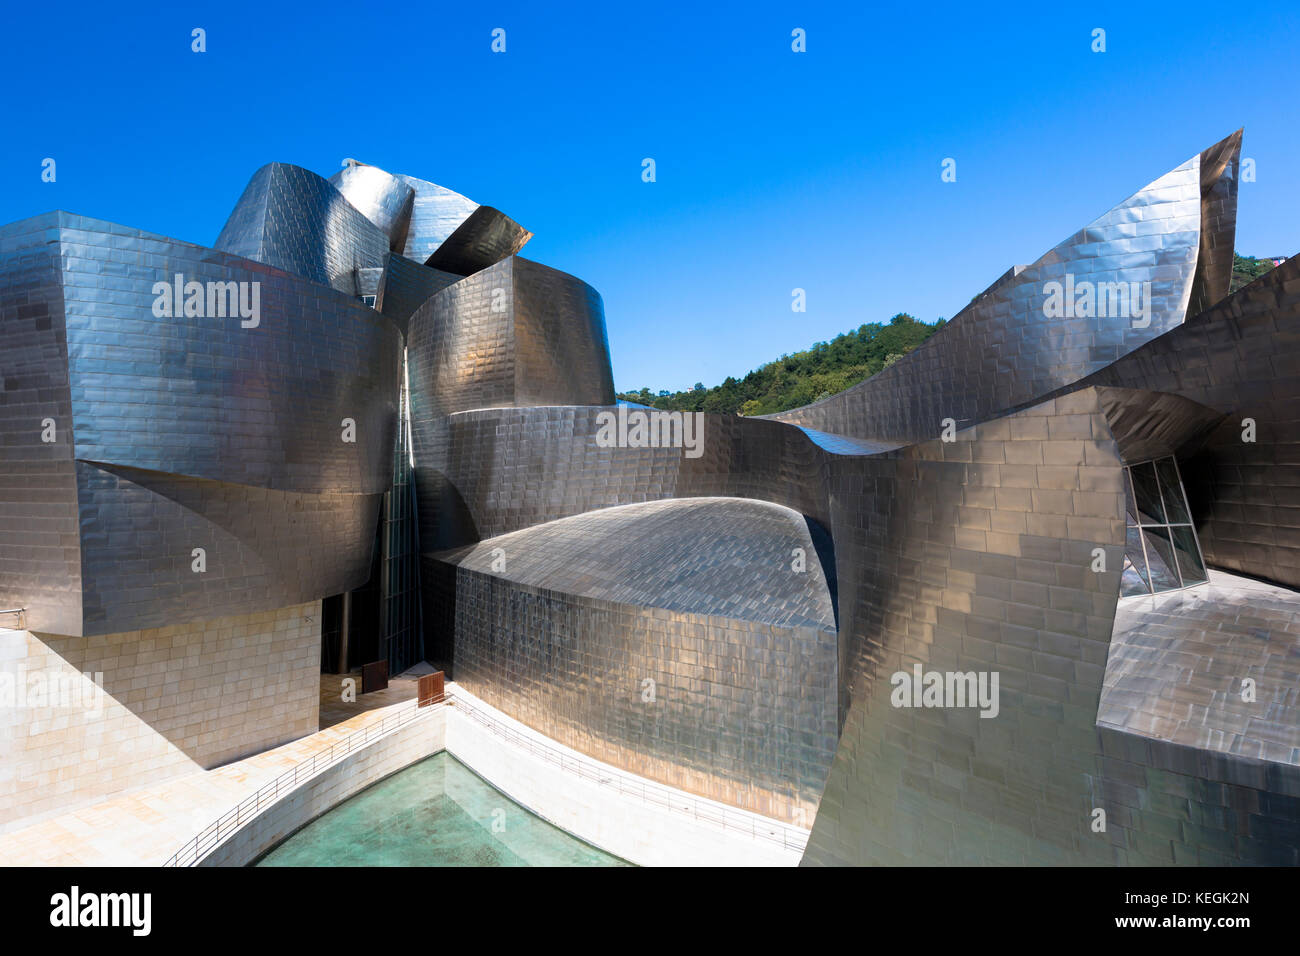 Museo Guggenheim dell'architetto Frank Gehry, futuristico design architettonico in titanio e vetro a Bilbao, Paesi Baschi, Spagna Foto Stock